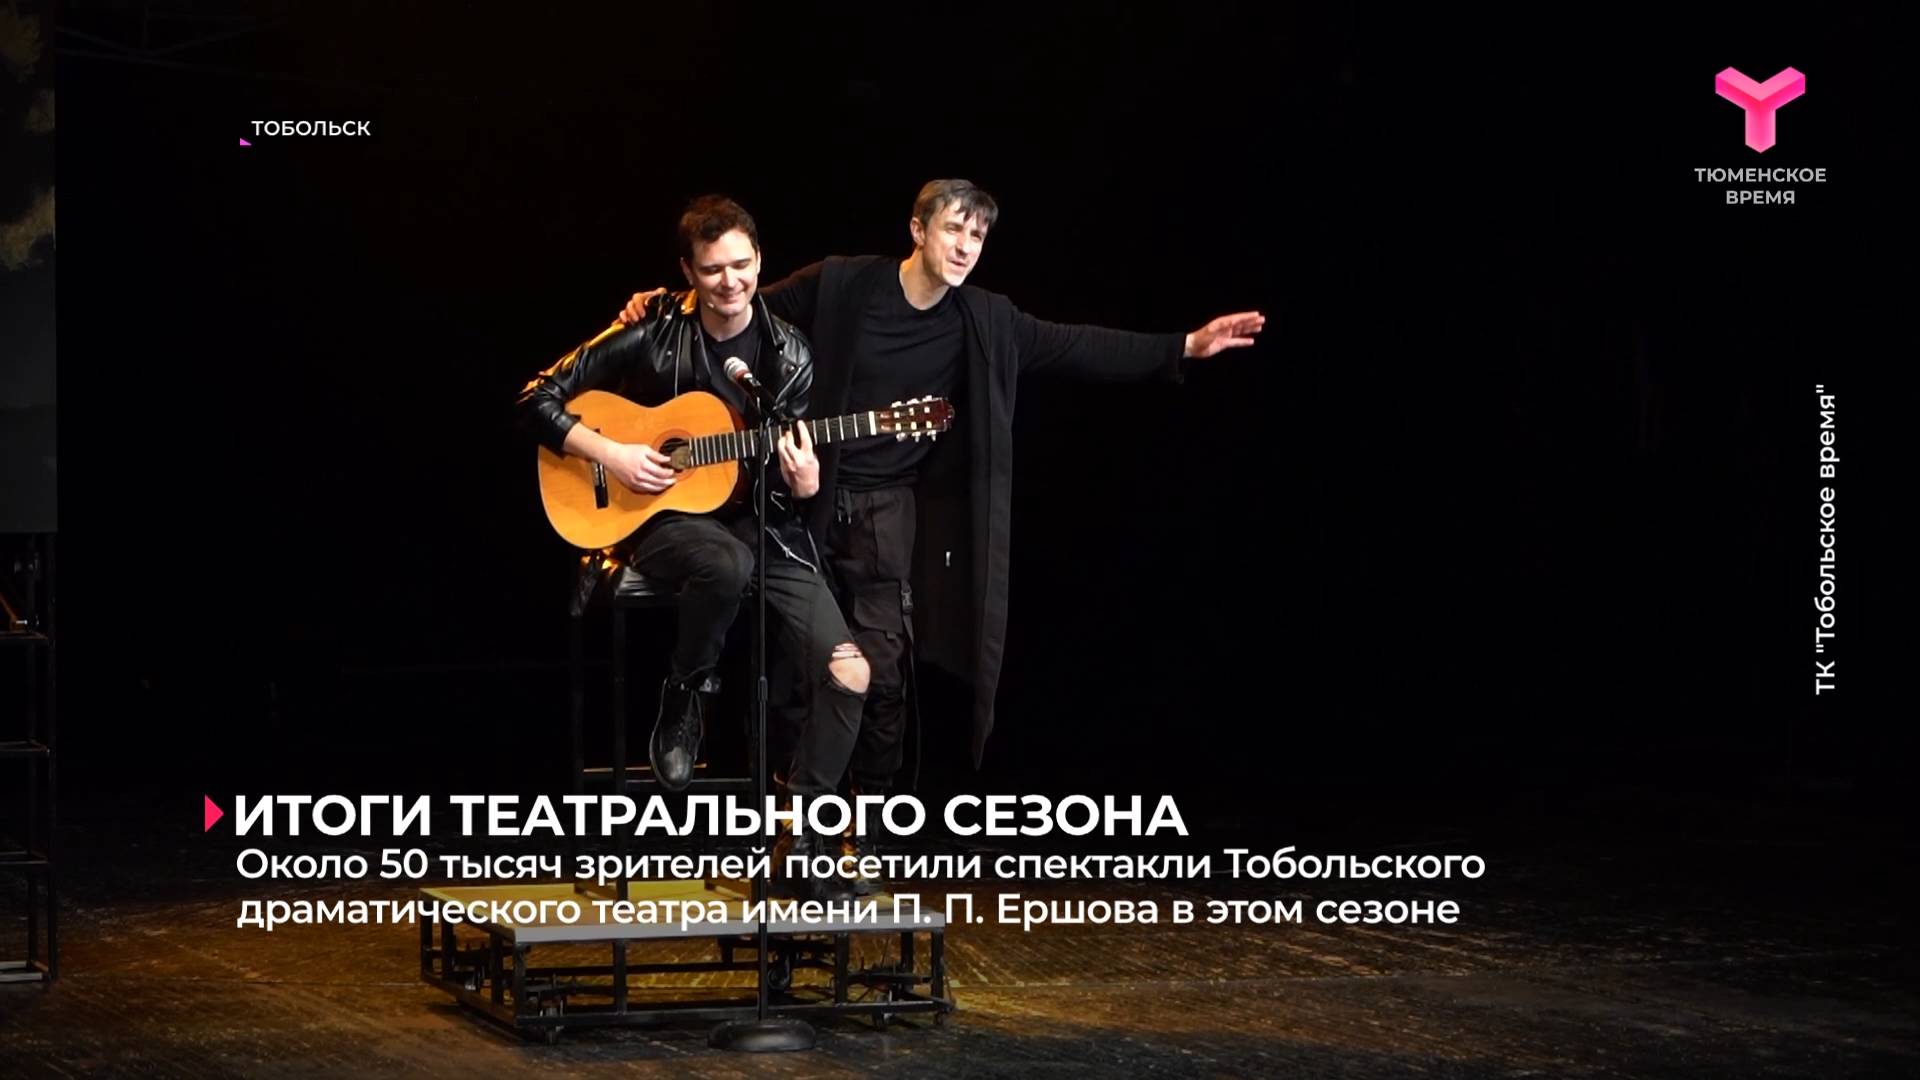 Около 50 тысяч зрителей посетили спектакли Тобольского драматического театра имени П. П. Ершова